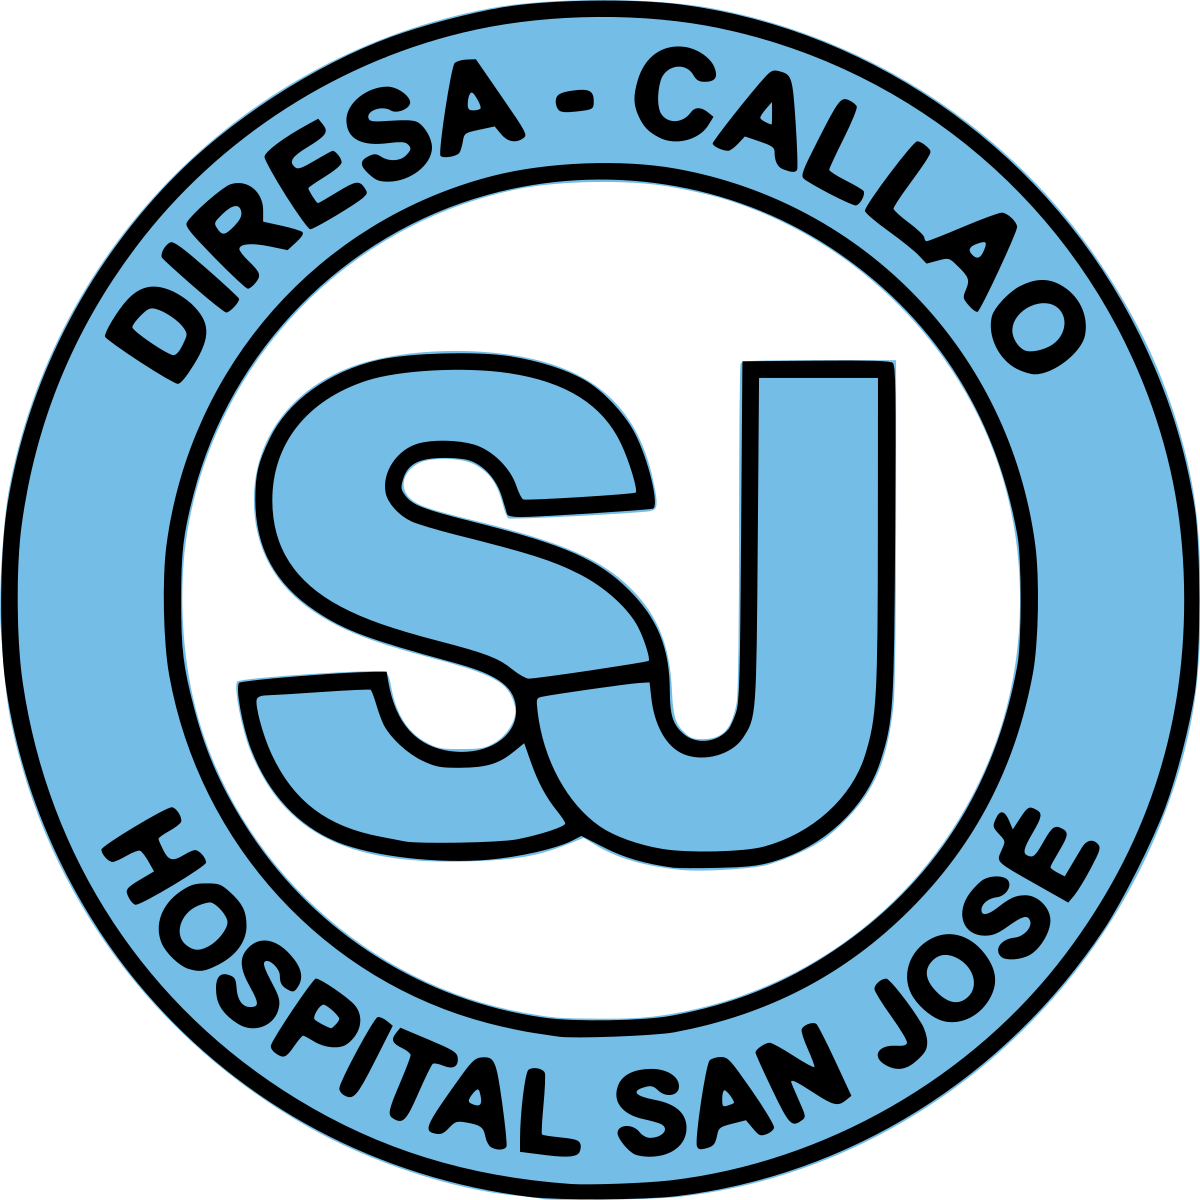 Tiendas Hospital San Jose